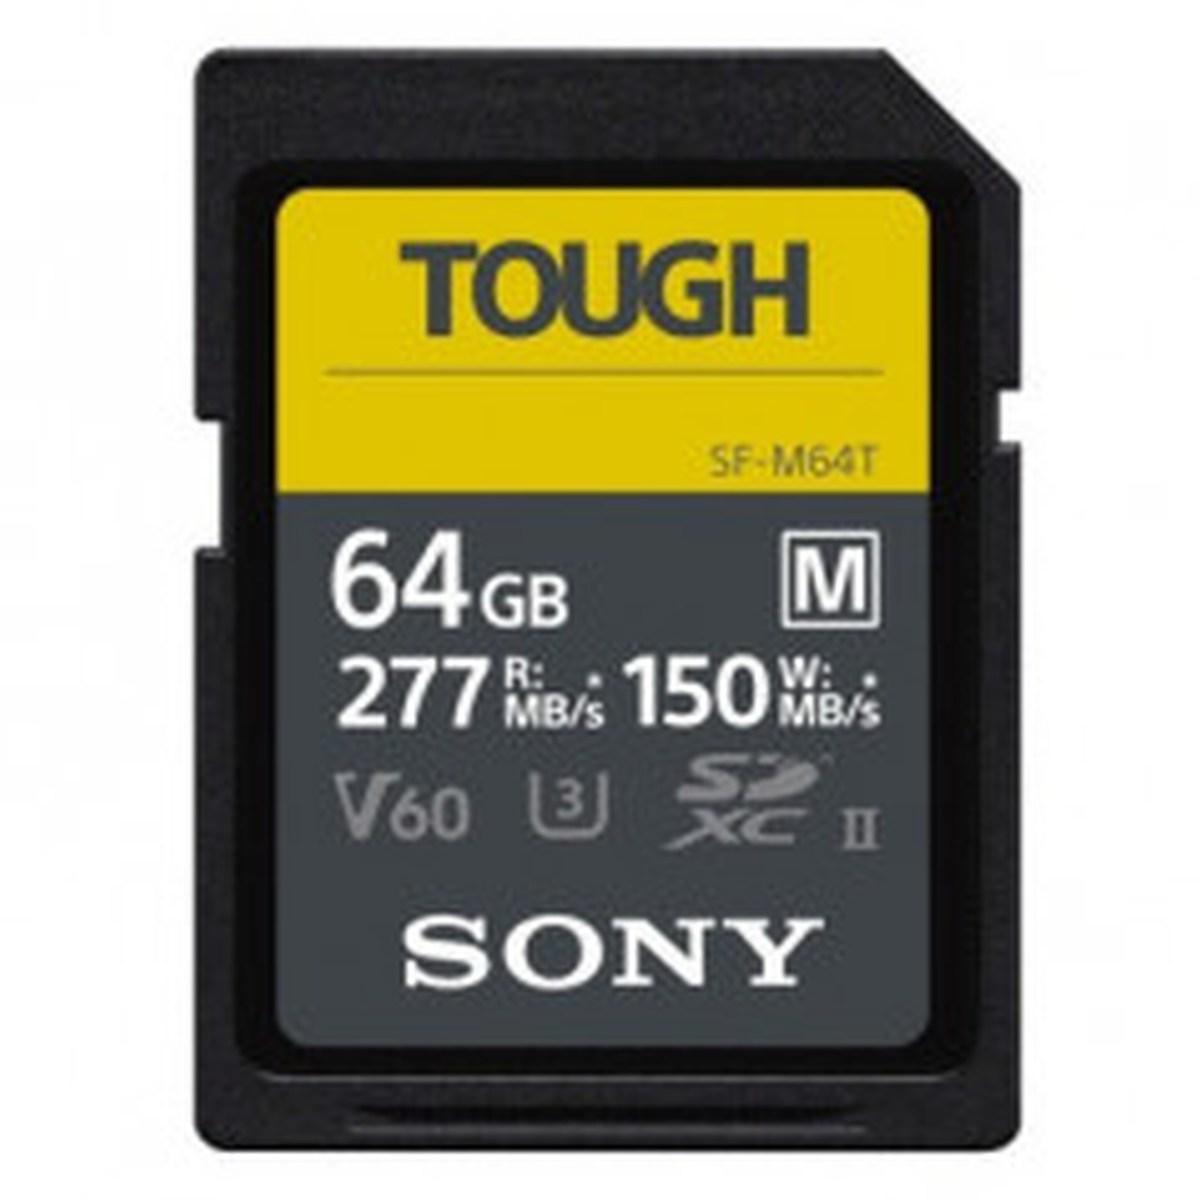 Sony sd hc 64gb serie m tough uhs-ii u3 277mbs/150mbs 4k